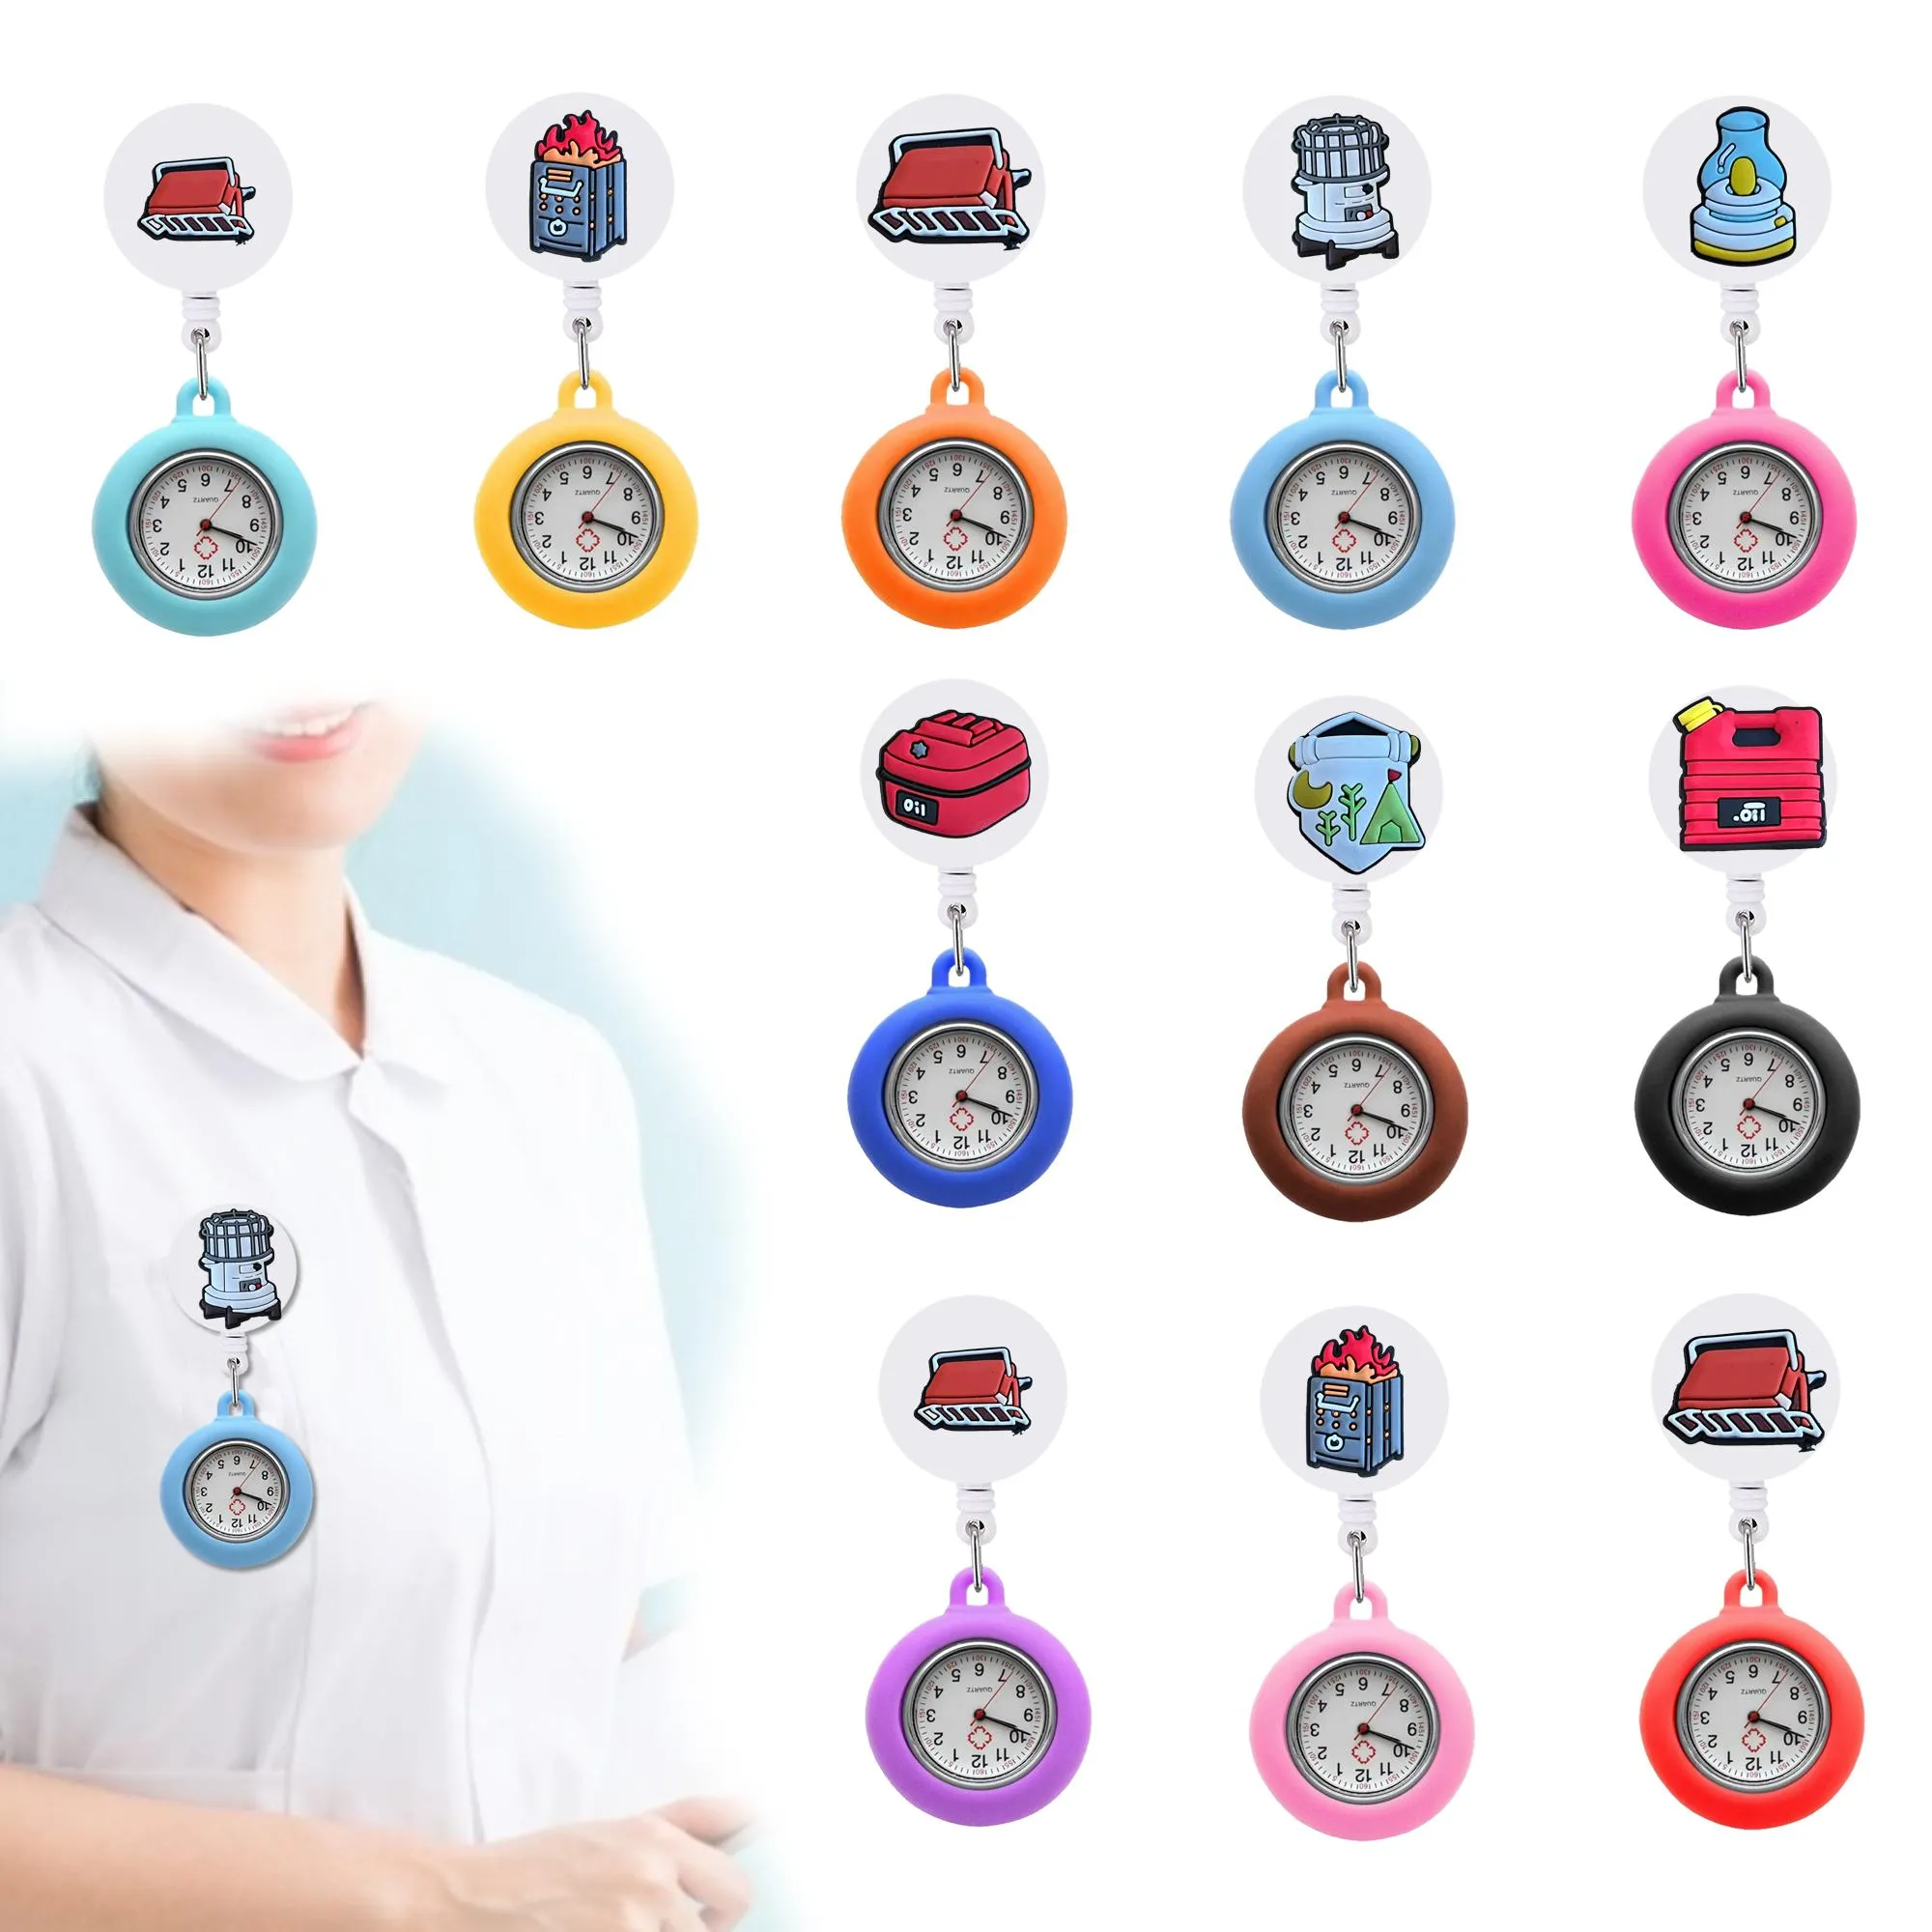 Zegrze biurka codzienne potrzeby klip zegarki kieszonkowe wzór pielęgniarki zegarek z używanymi rękami do prezentów studenckich klip otzbi